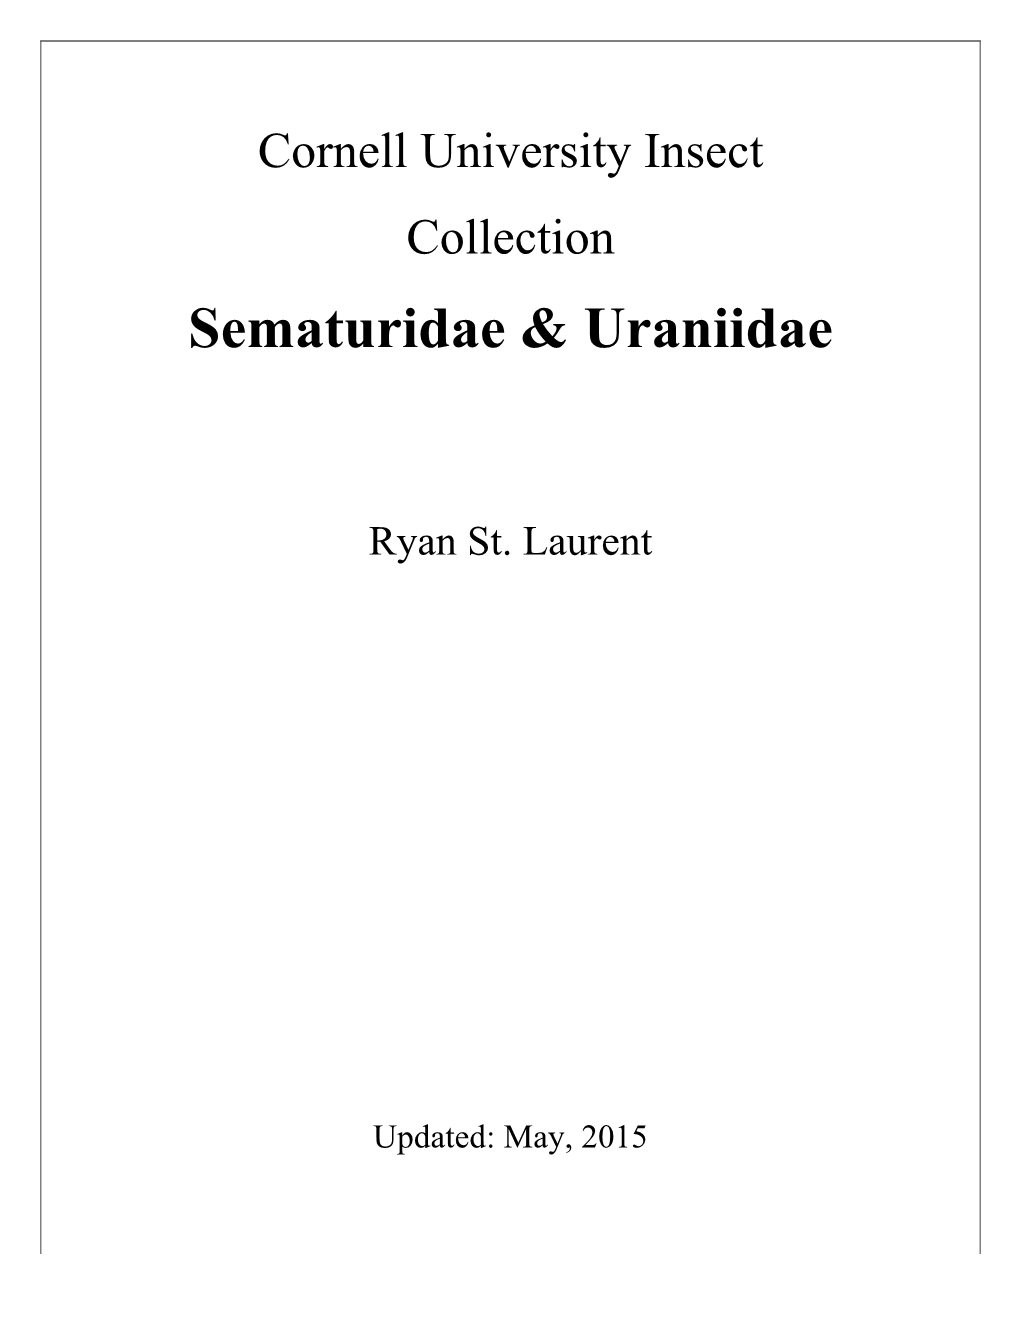 Sematuridae & Uraniidae